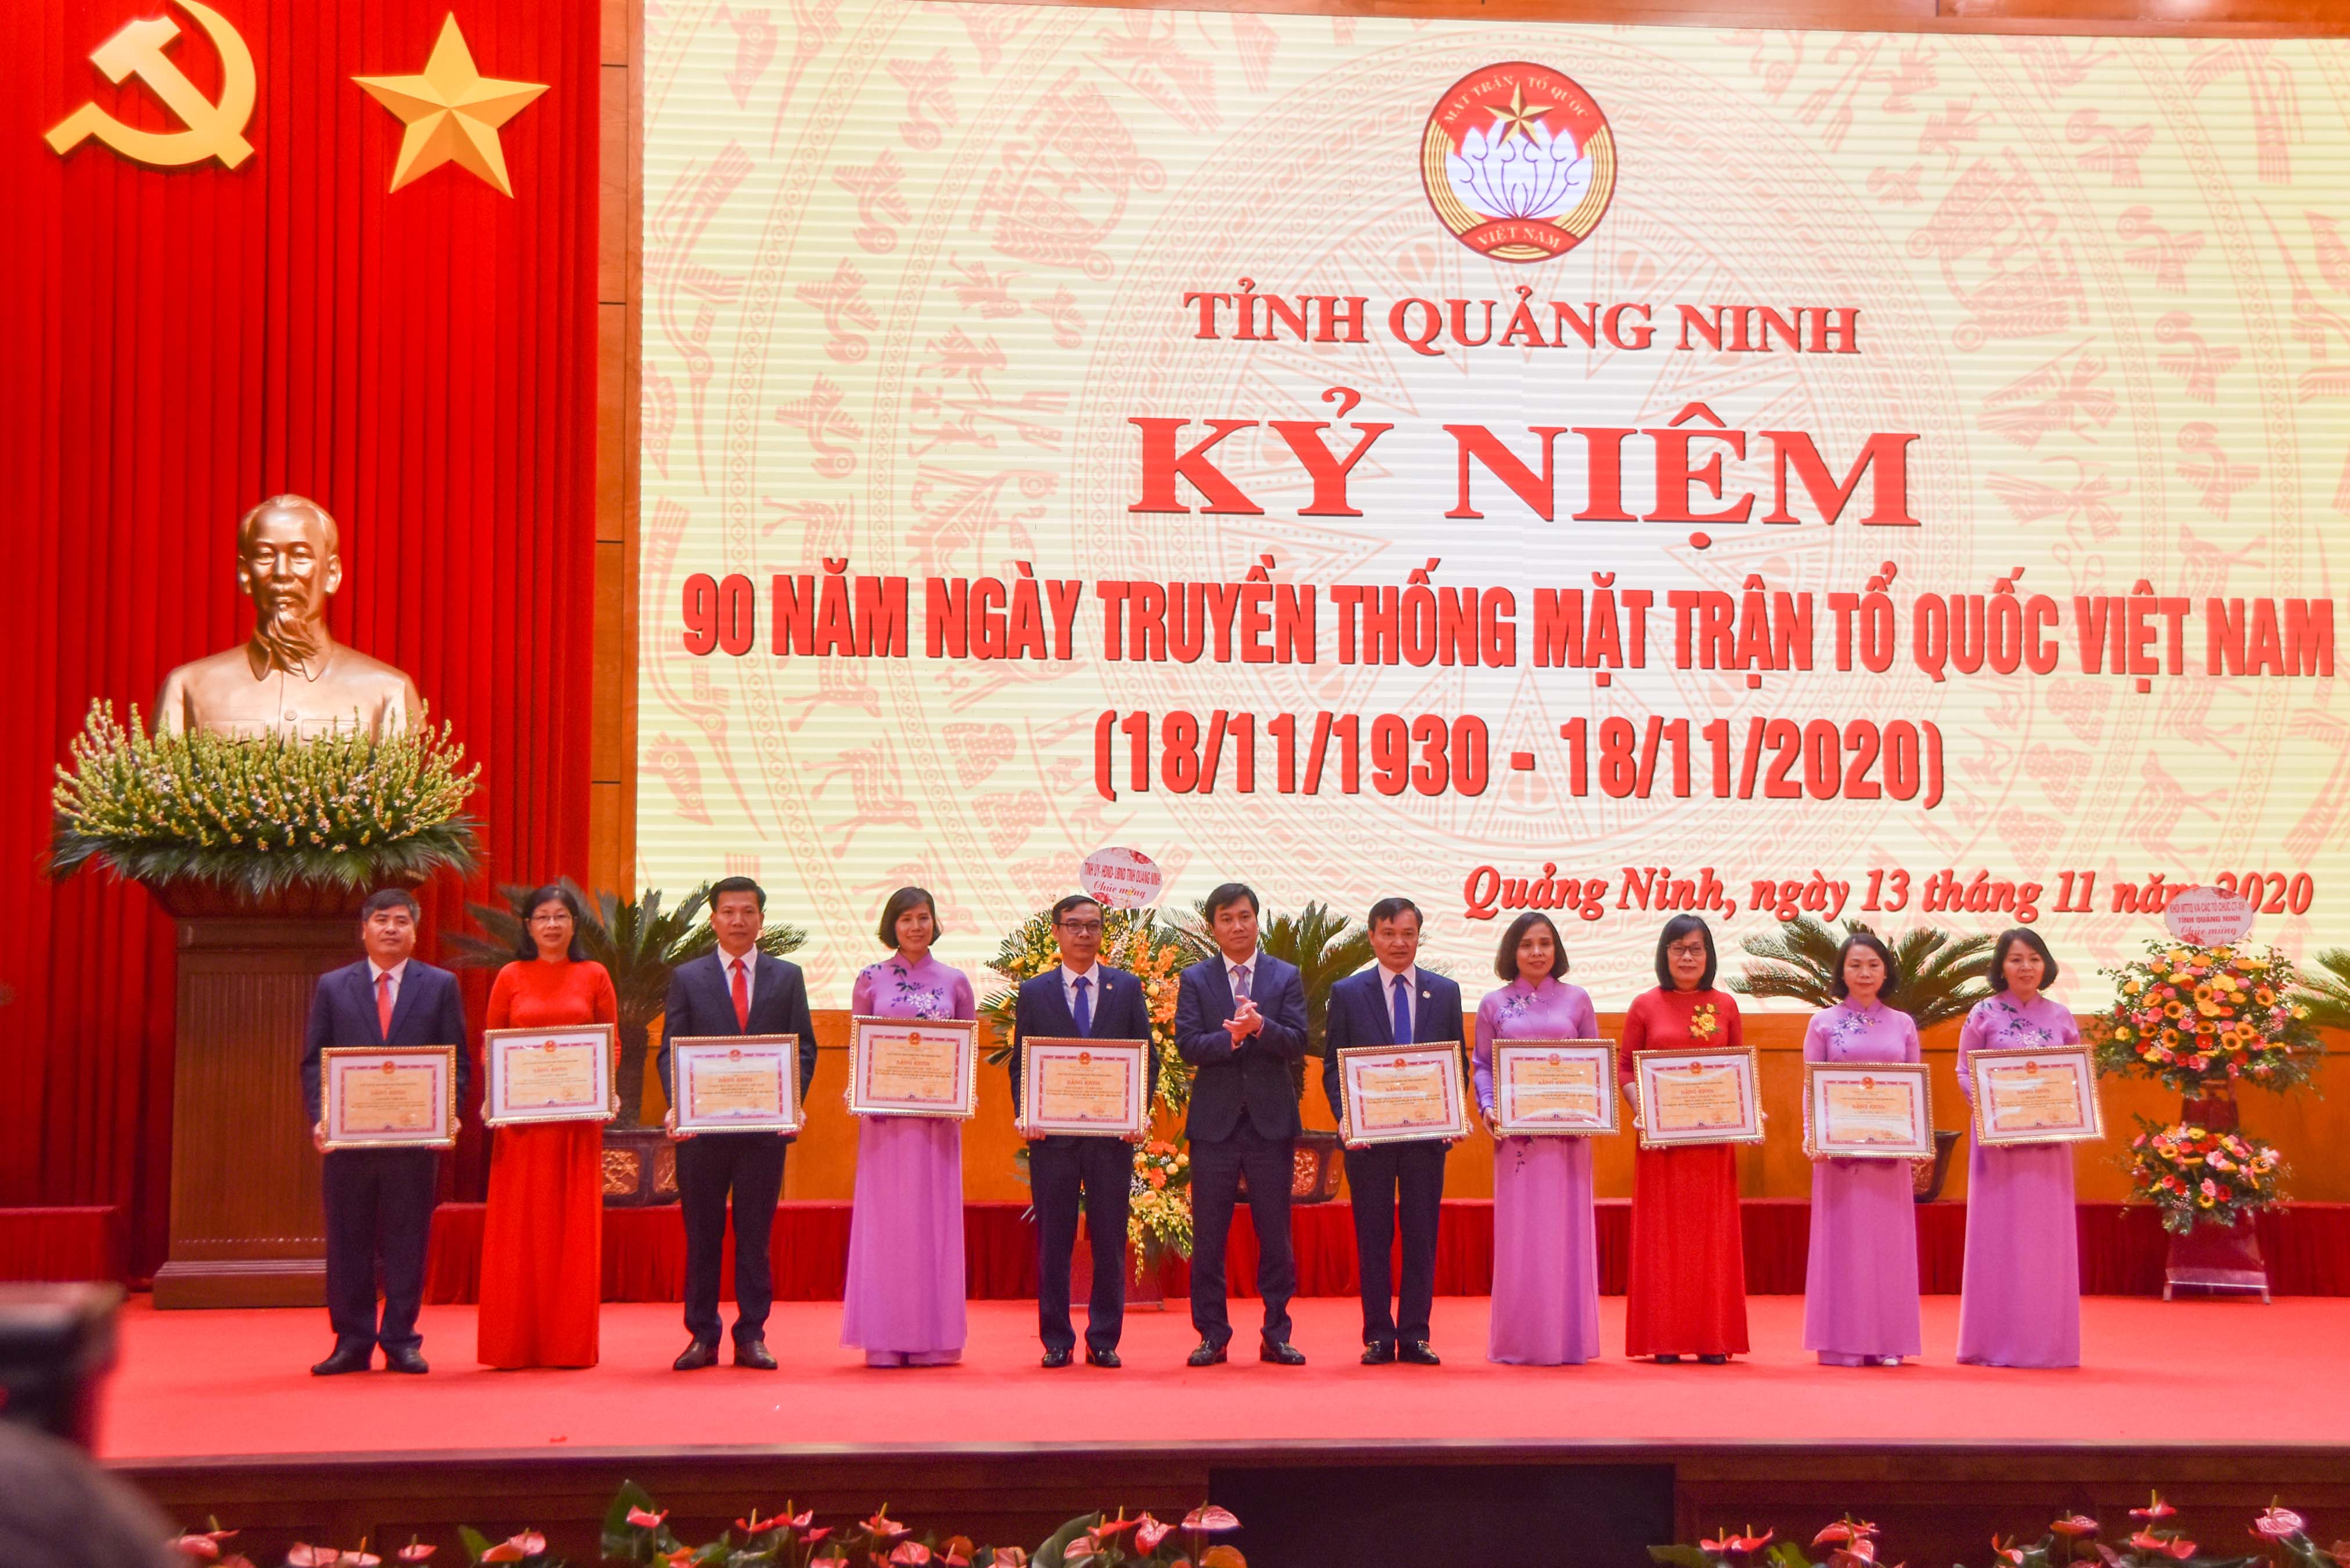 Đồng chí Nguyễn Tường Văn, Phó Bí thư Tỉnh ủy, Chủ tịch UBND tỉnh, trao bằng khen cho các tập thể, cá nhân nhân dịp kỷ niệm 90 năm ngày truyền thống MTTQ.